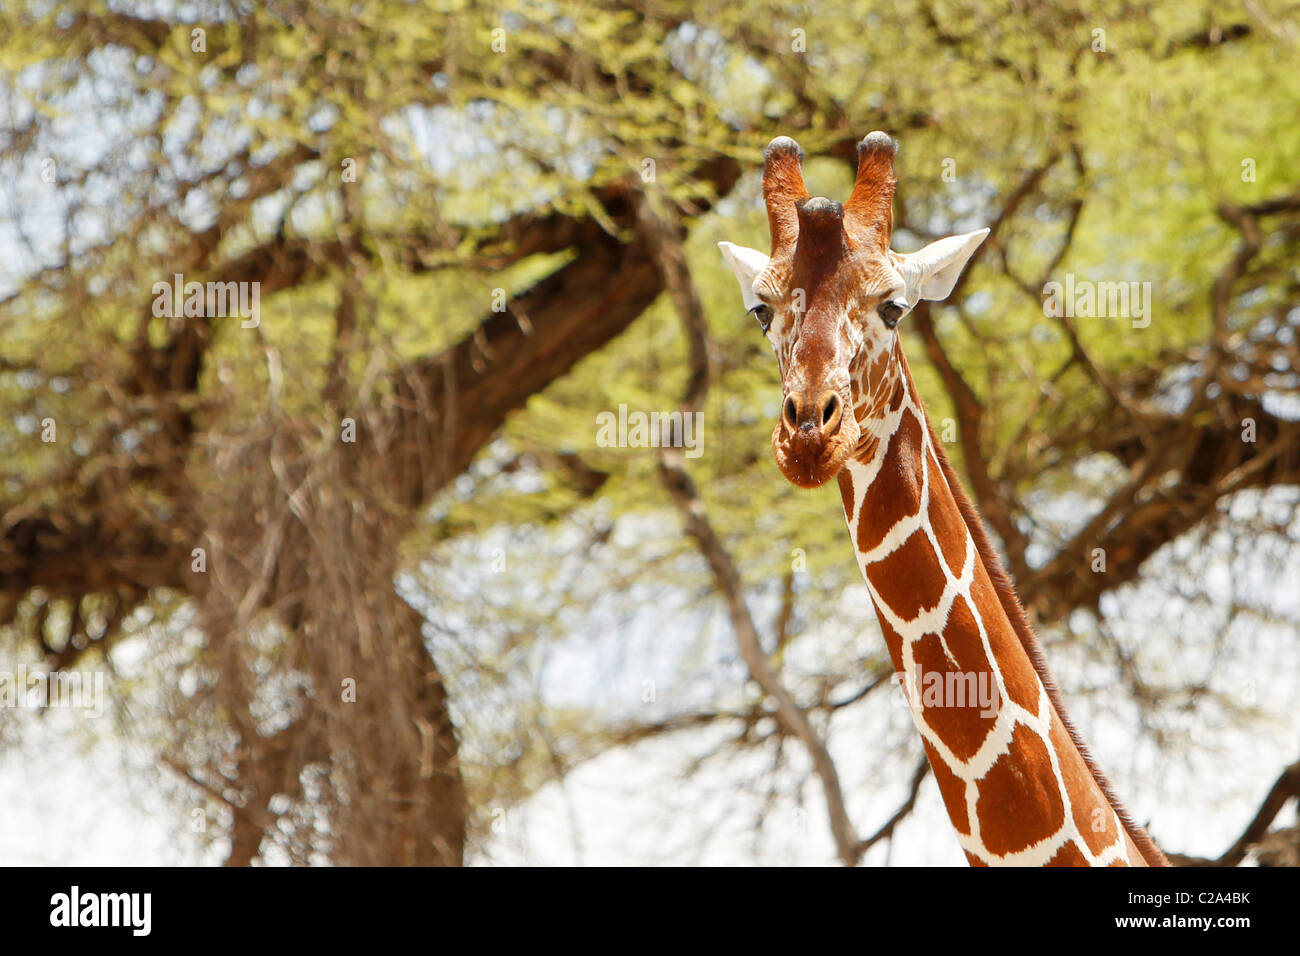 A Reticulated Giraffe in the Samburu National Reserve, Kenya Stock Photo